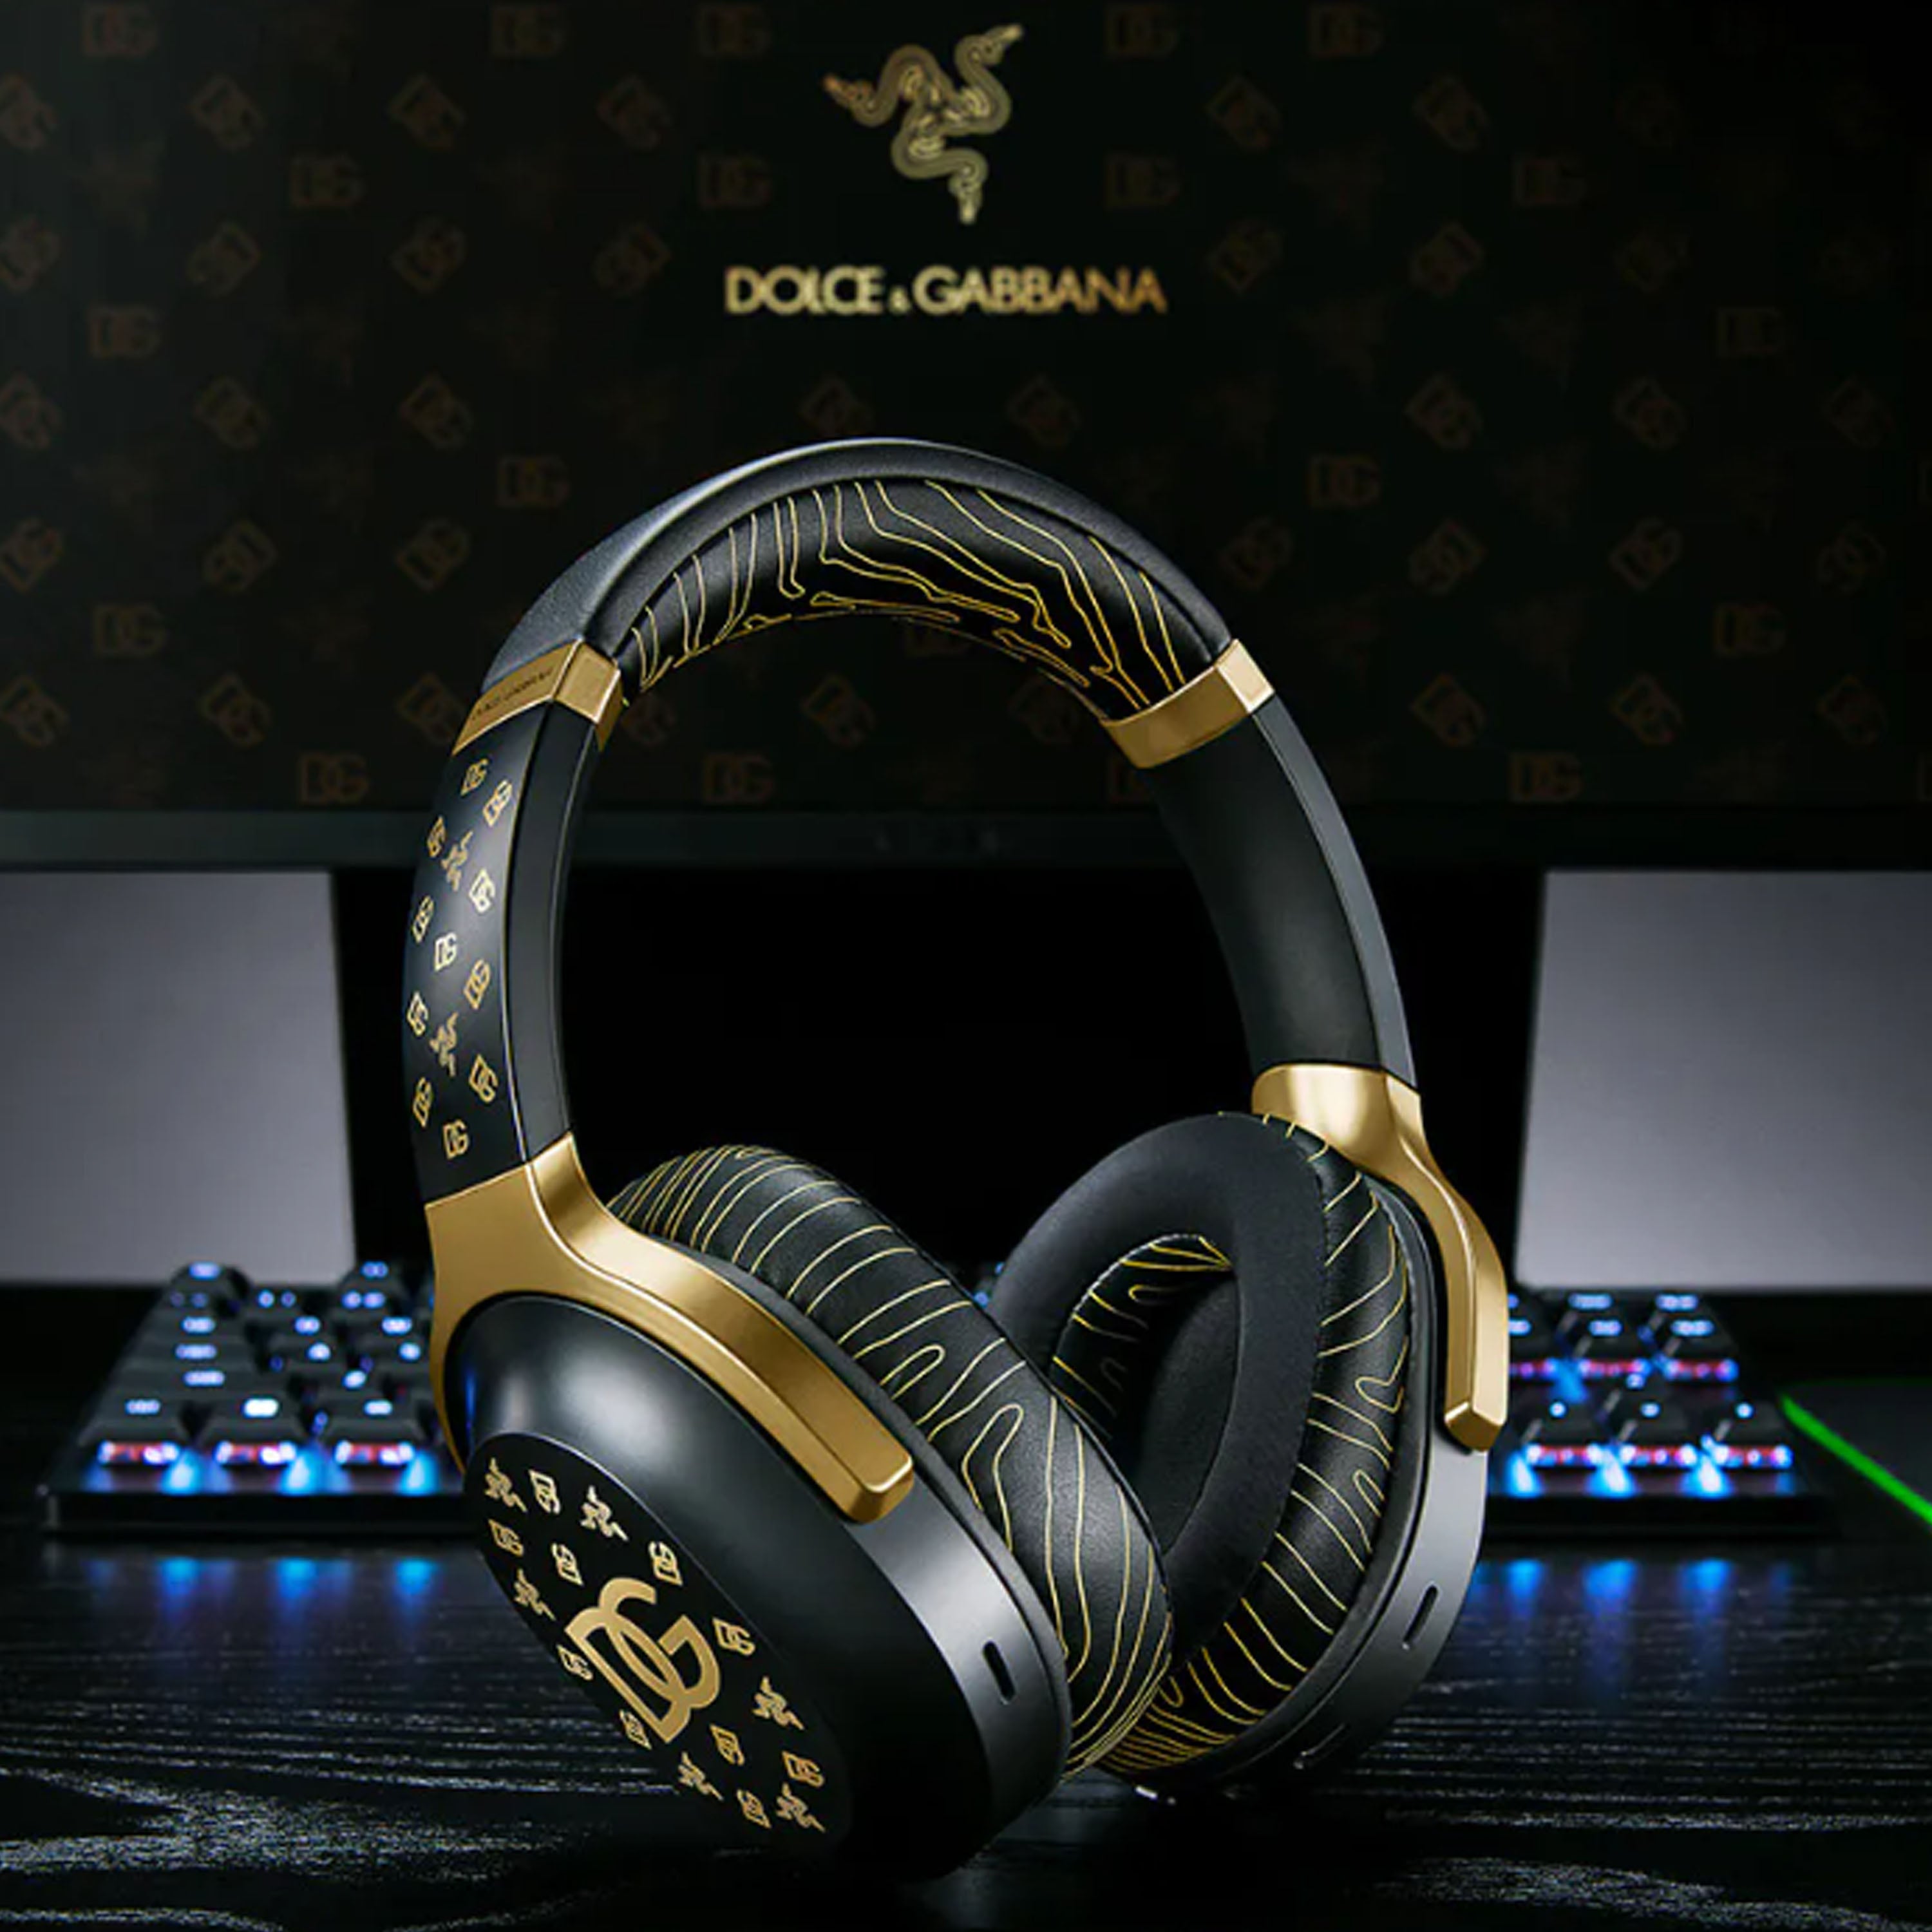 Razer Barracuda - Dolce & Gabbana Edition